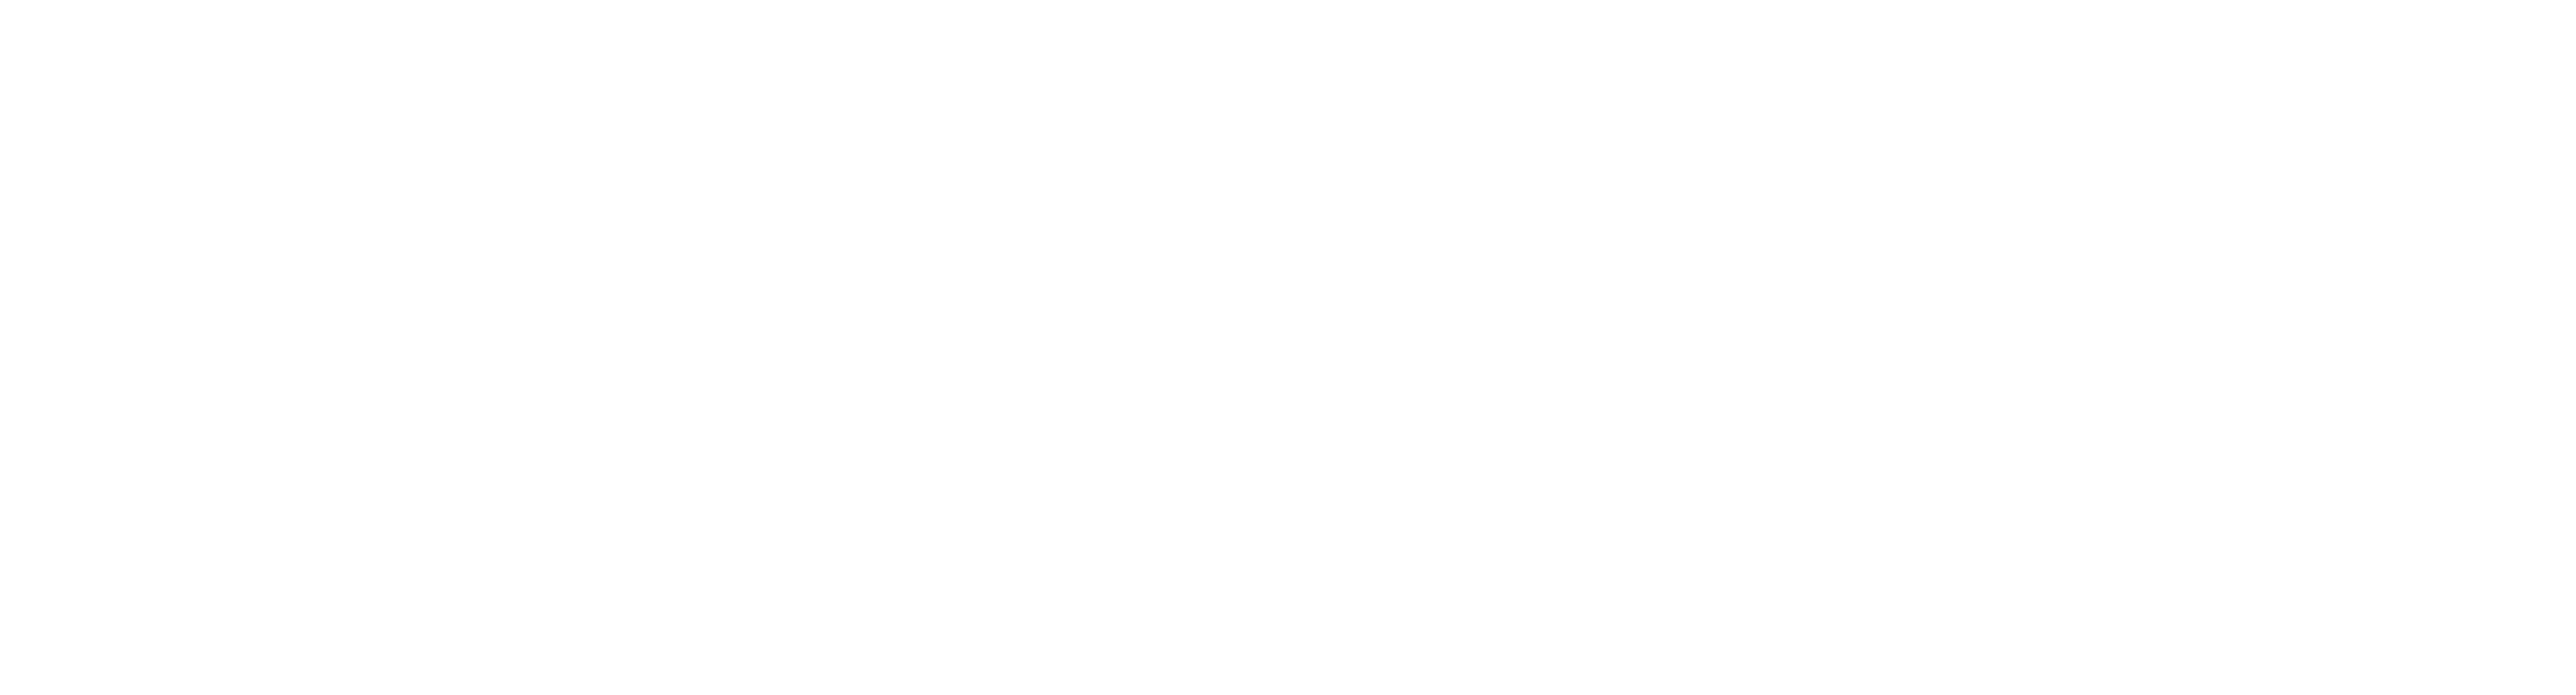 skis-logo